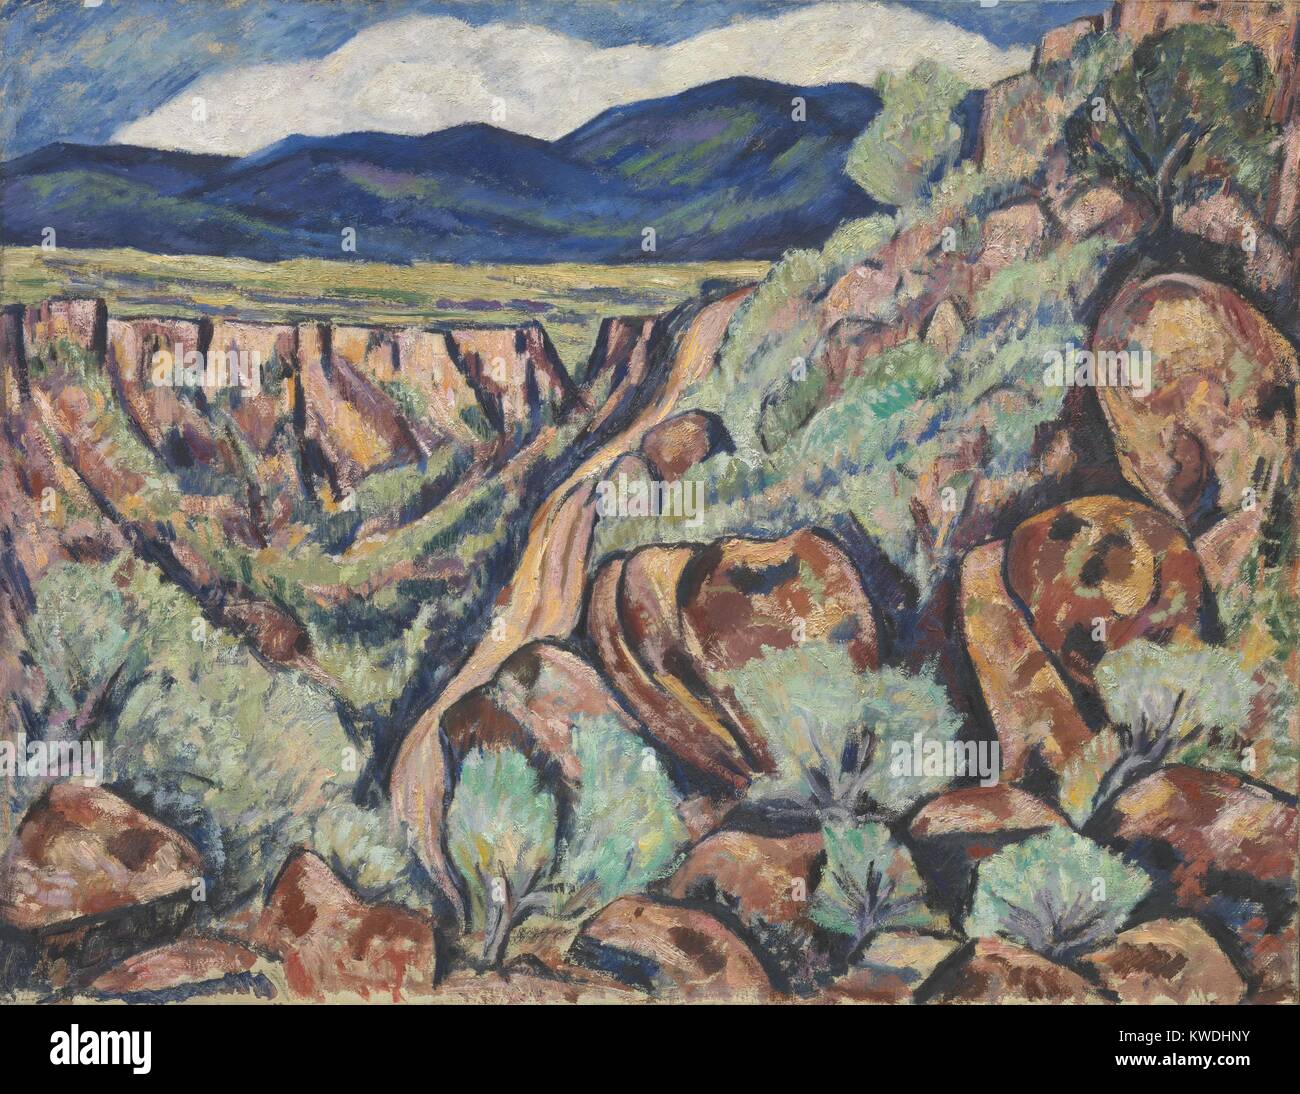 Paysage, Nouveau Mexique, par Marsden Hartley, 1919-1920, American peinture, huile sur toile. C'est exécuté dans une synthèse musculaire Hartleys du Cubisme et l'Expressionnisme Allemand (BSLOC 2017 7 107) Banque D'Images